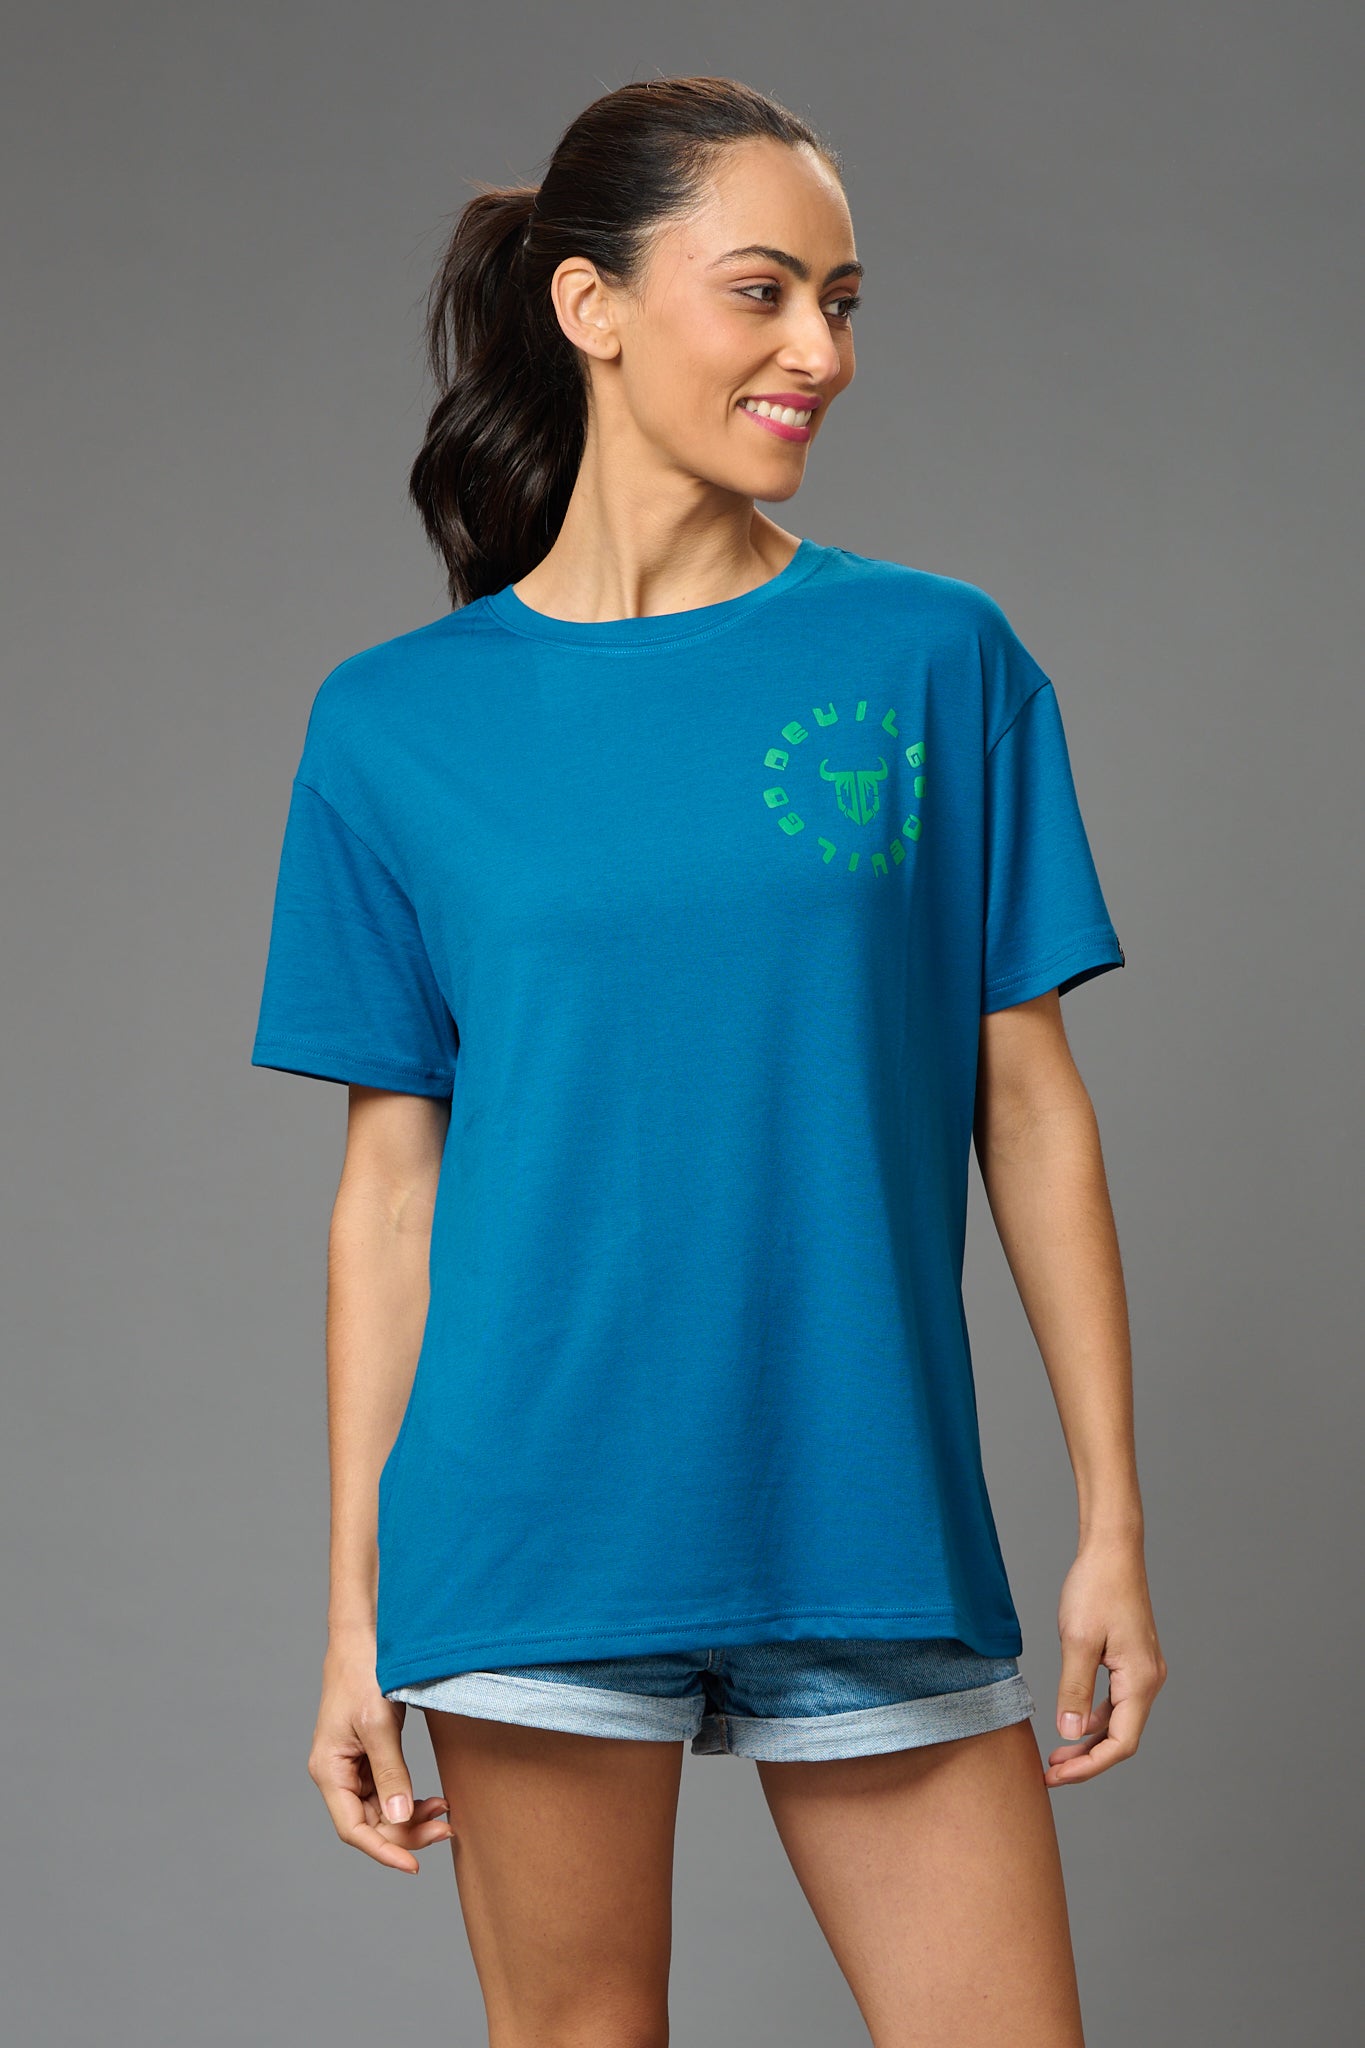 Feel Your Feelings Printed Blue Oversized T-Shirt for Women - Go Devil